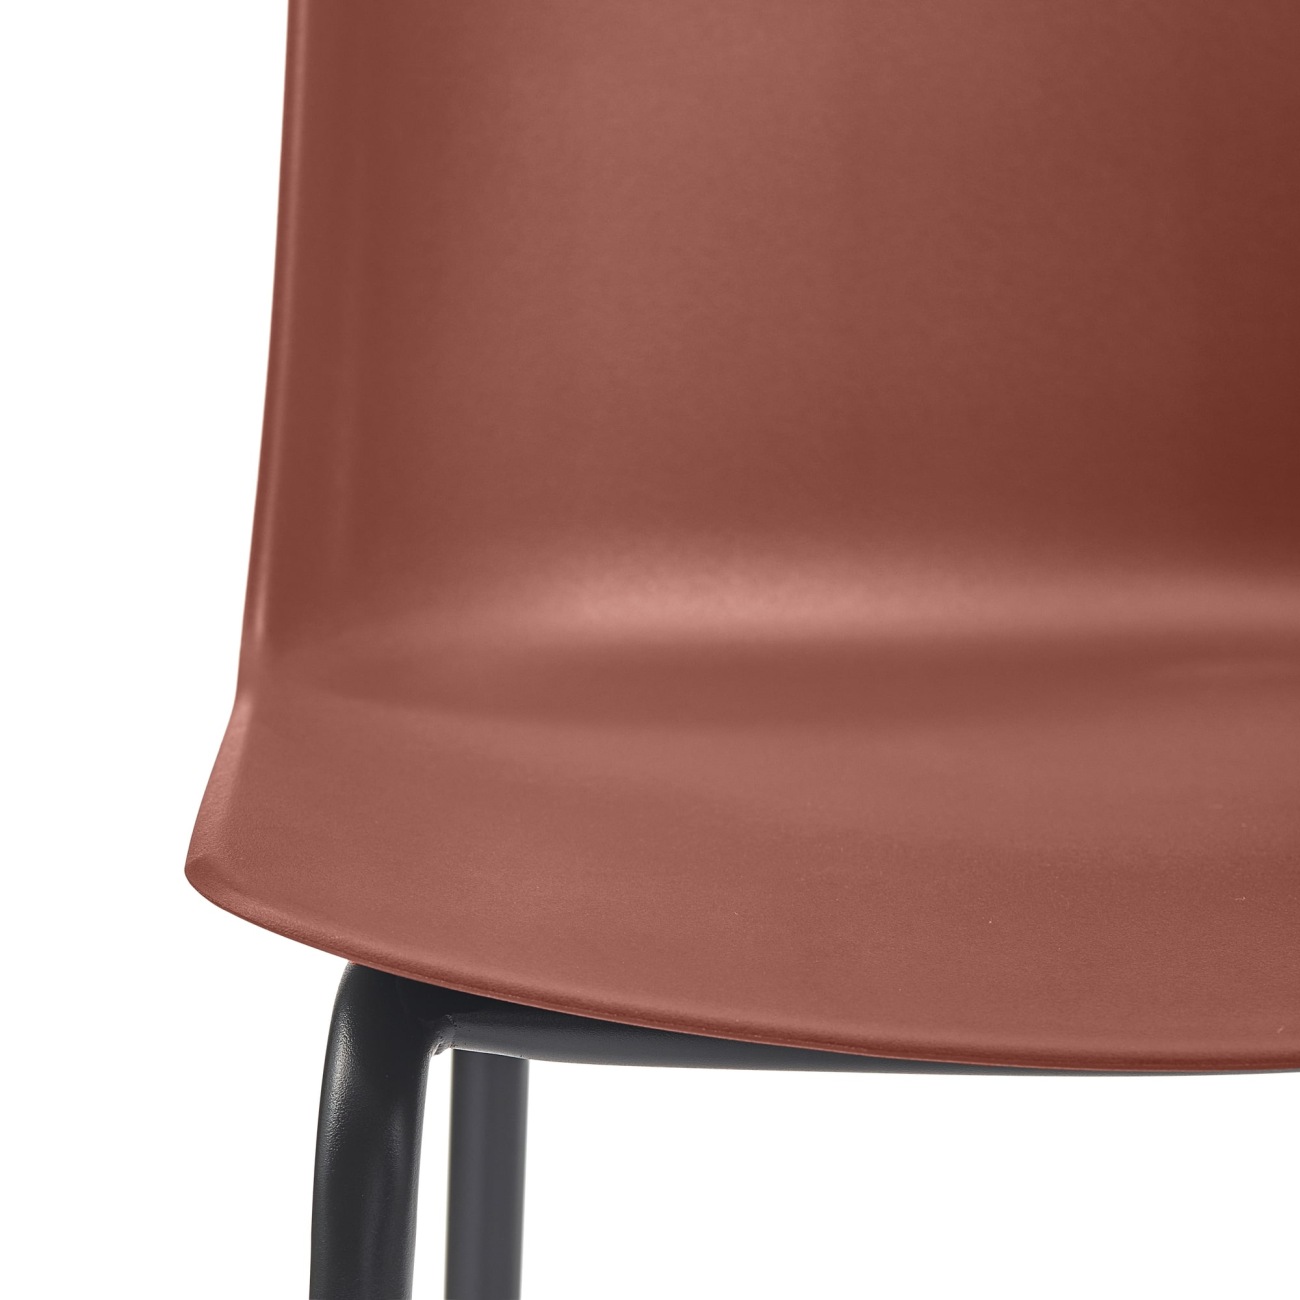 Der Gartenbarstuhl Guy überzeugt mit seinem modernen Design. Gefertigt wurde er aus Kunststoff, welcher einen roten Farbton besitzt. Das Gestell ist aus Metall und hat eine schwarze Farbe. Der Barstuhl besitzt eine Sitzhöhe von 74 cm.